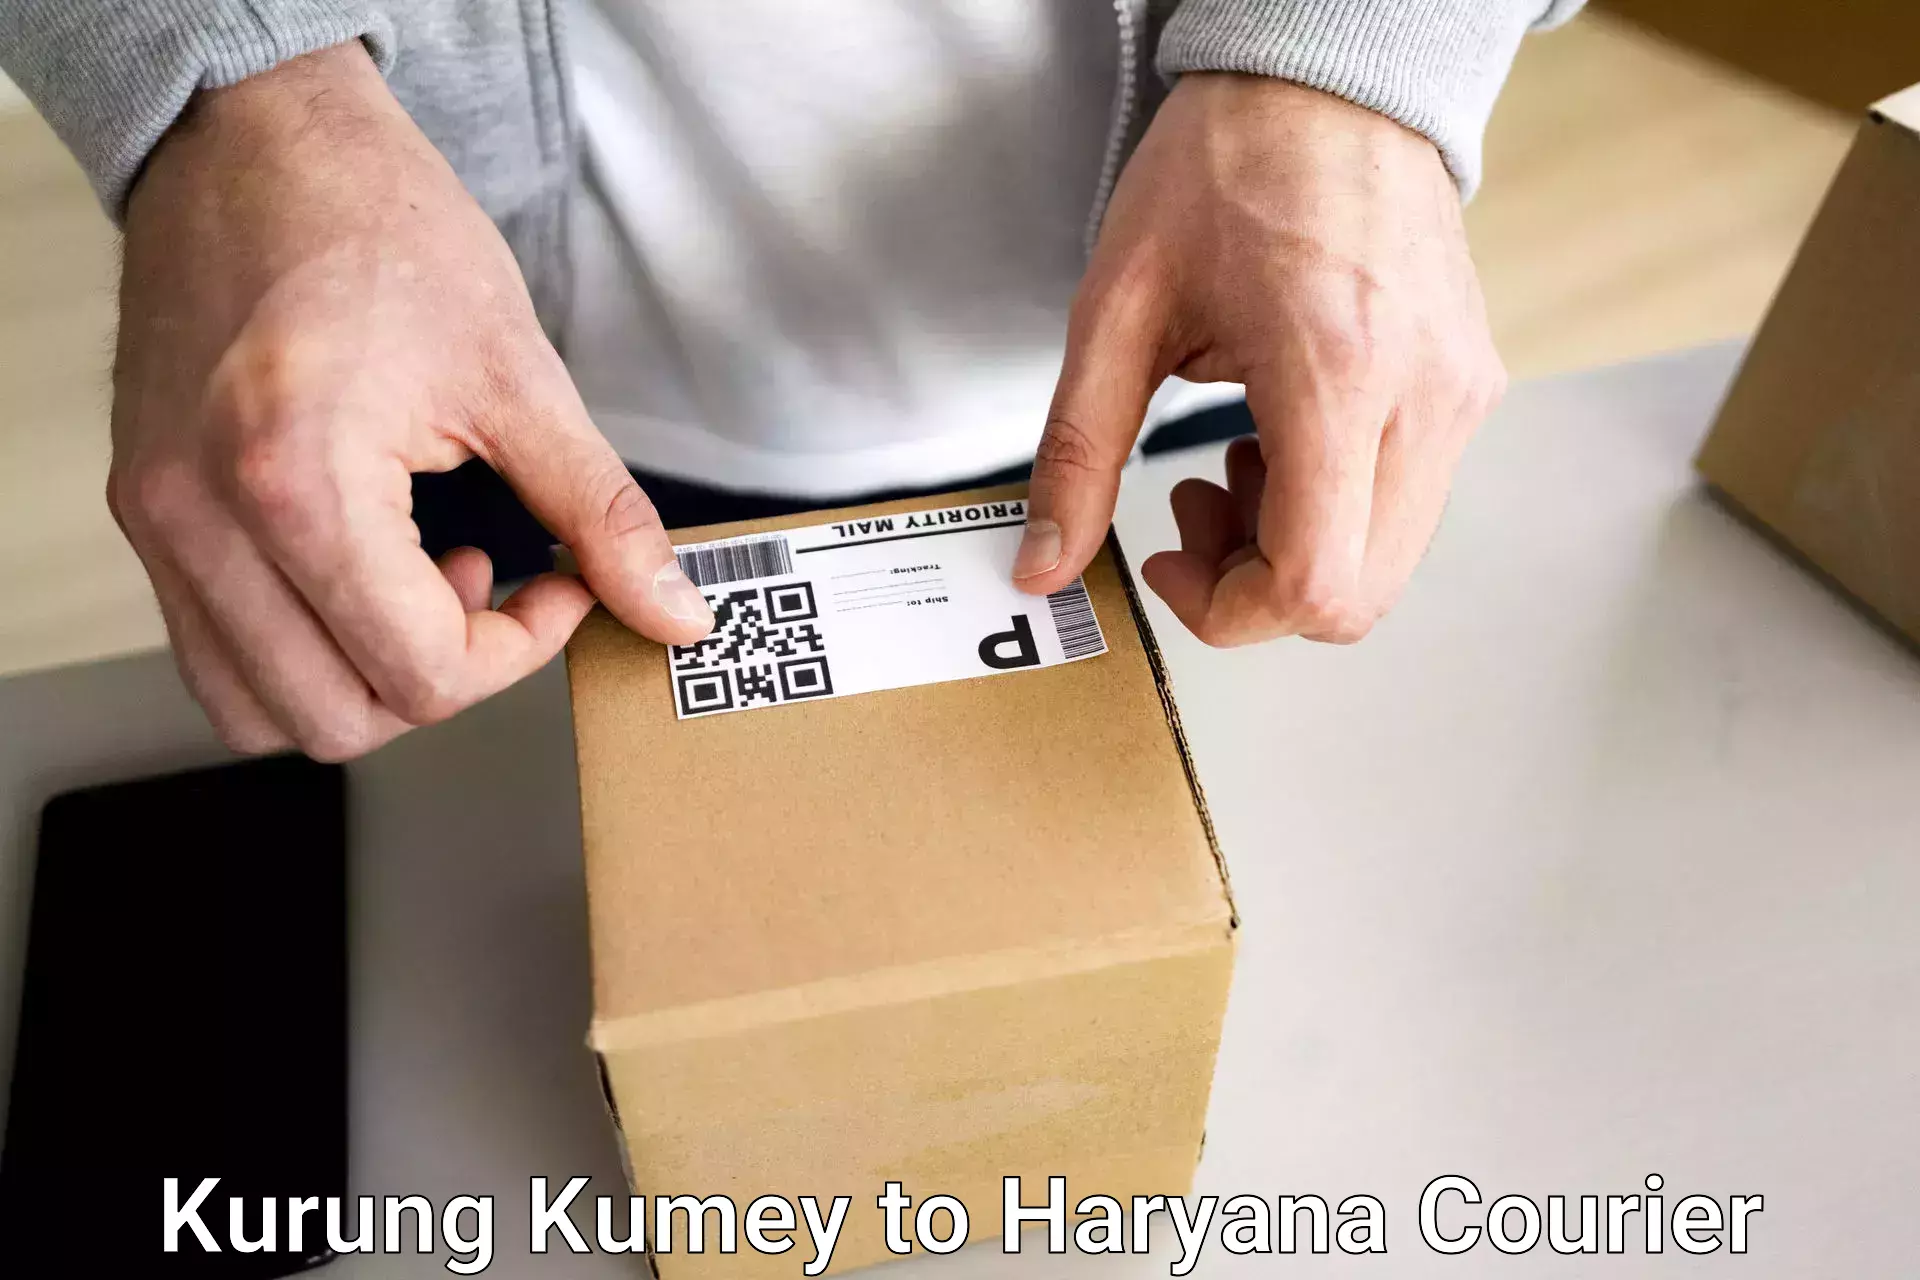 Baggage shipping service Kurung Kumey to Chaudhary Charan Singh Haryana Agricultural University Hisar